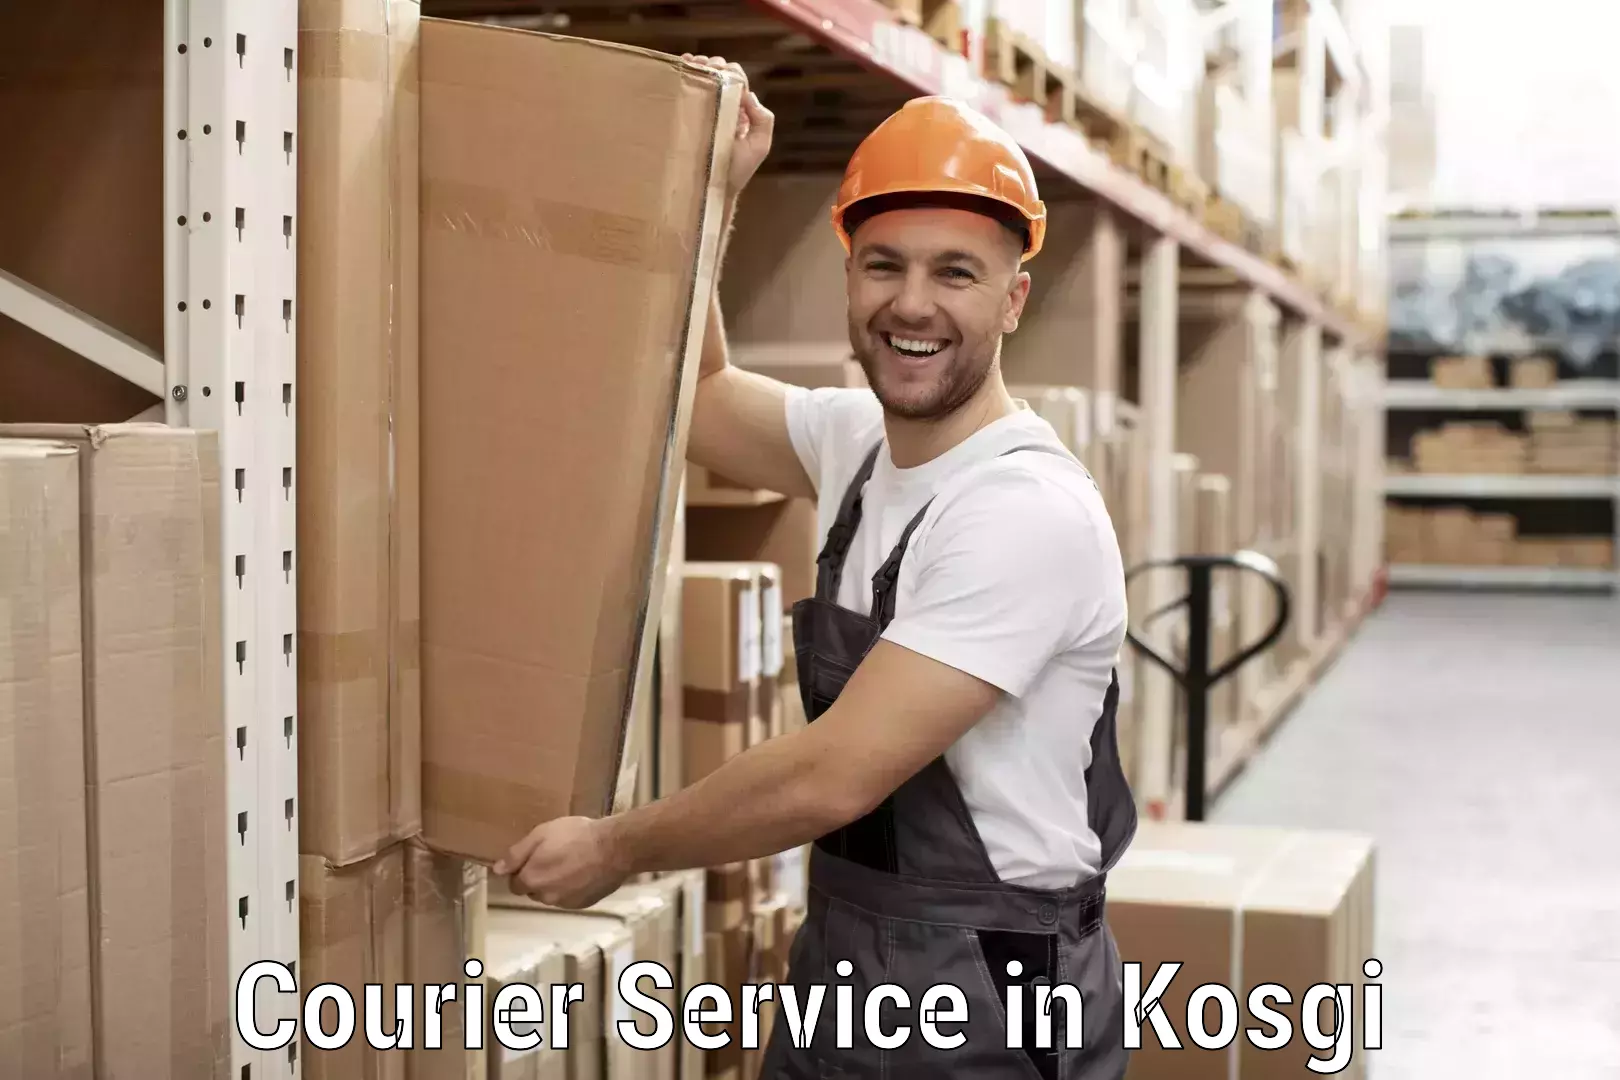 E-commerce fulfillment in Kosgi